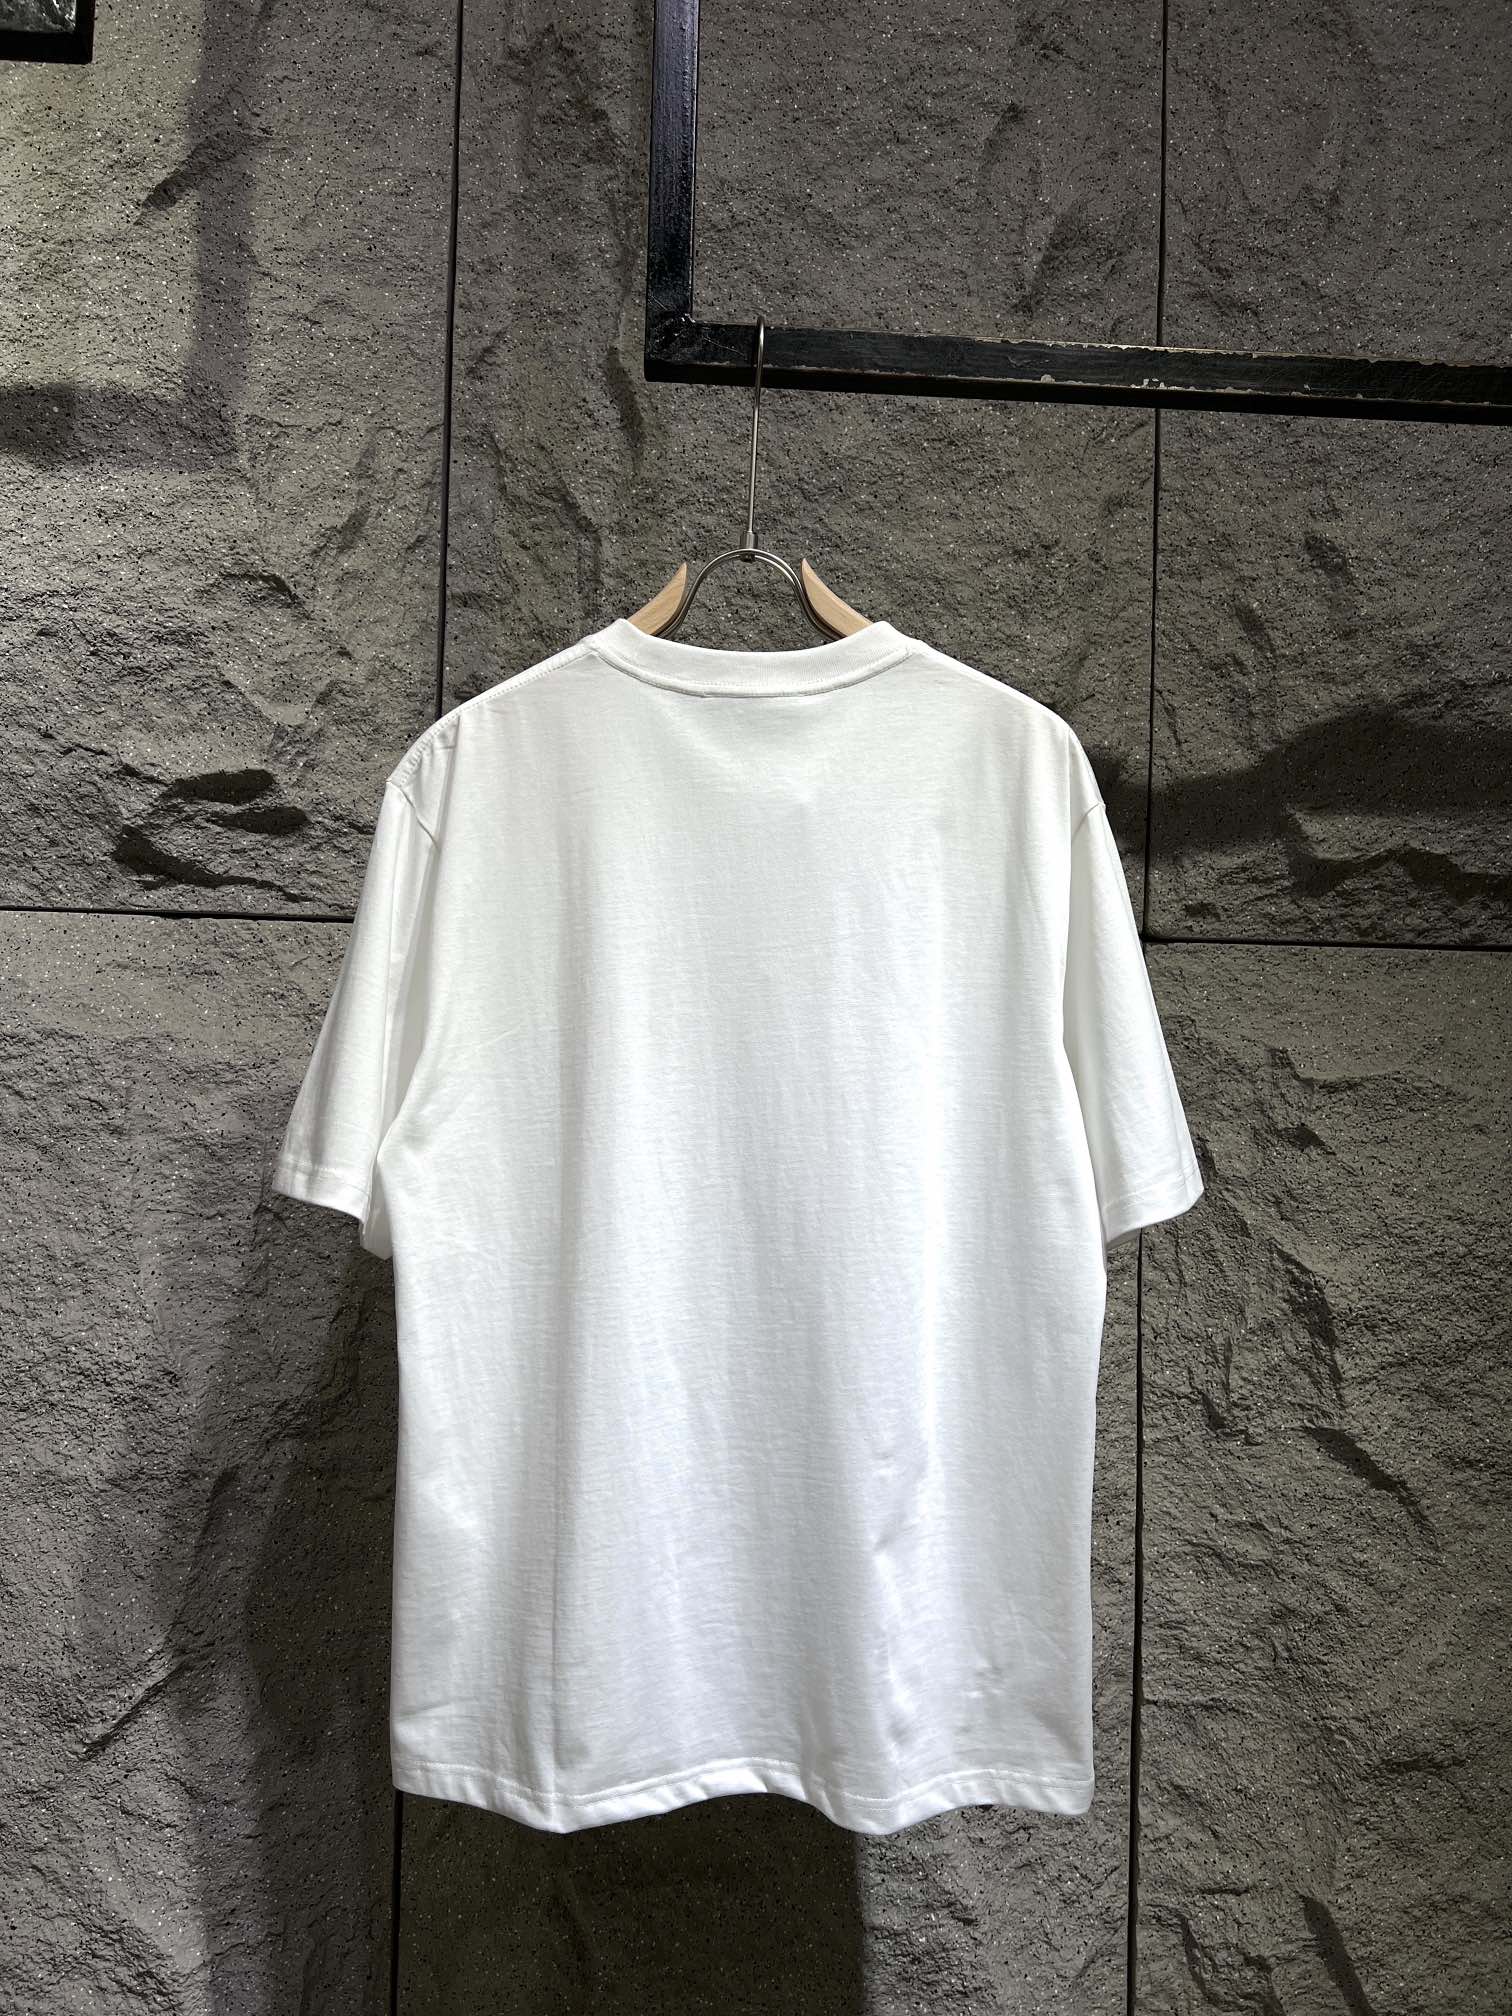 激安大特価最新作のグッチのtシャツスーパーコピー Gucci Tシャツ  3Dプリント_2